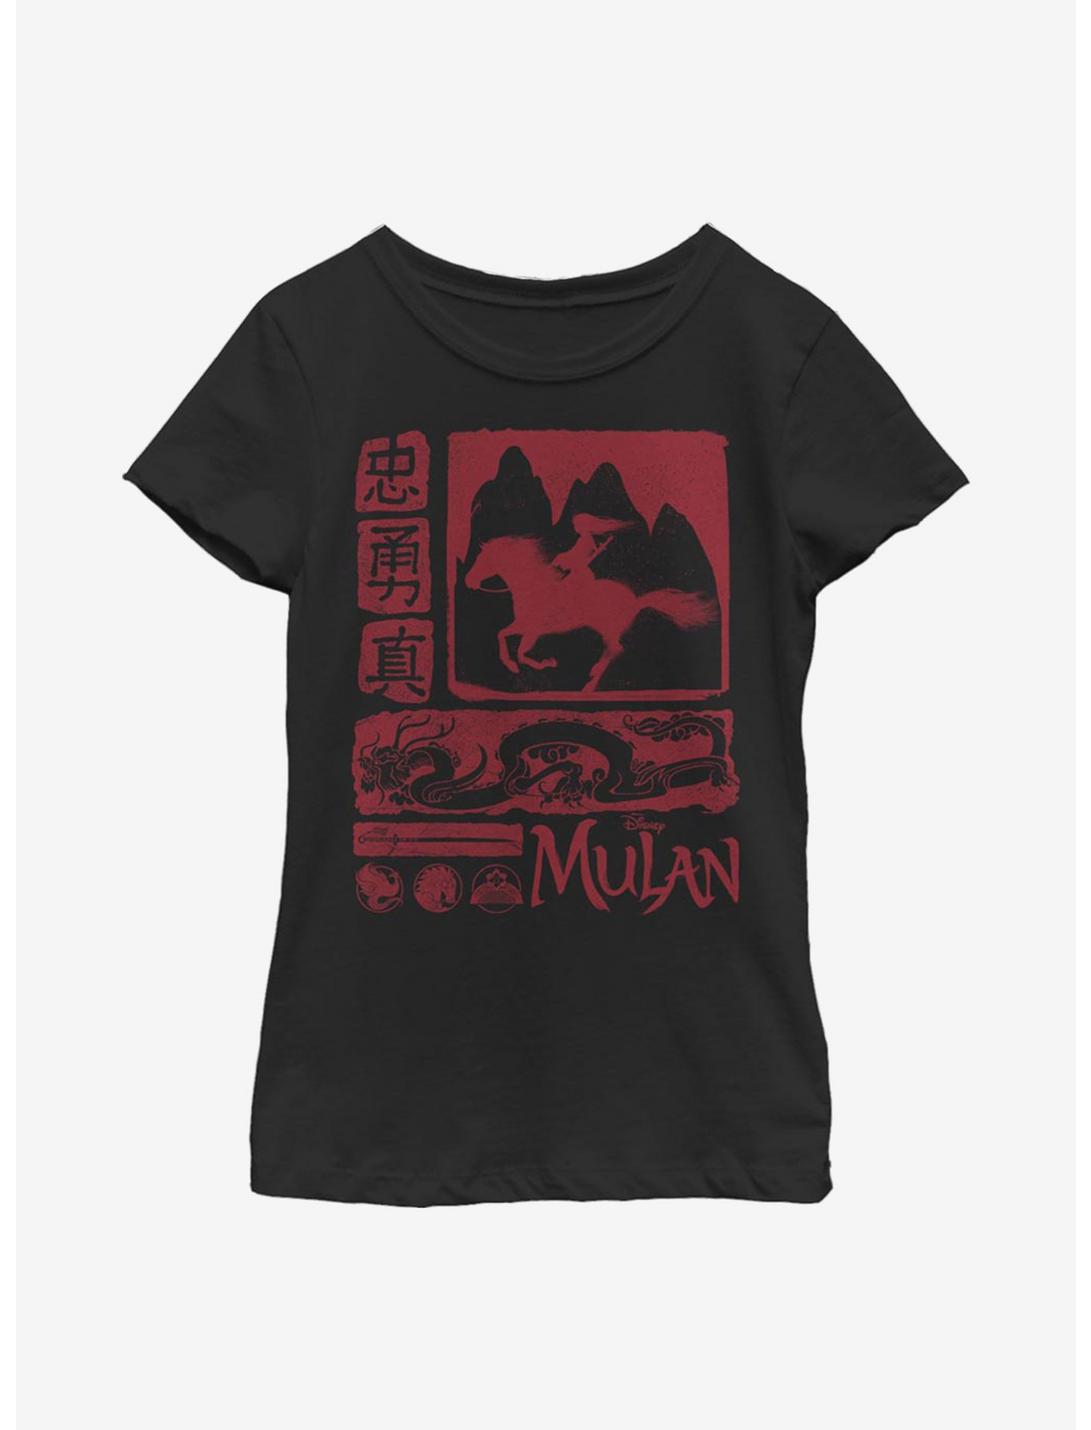 Plus Size Disney Mulan Block Youth Girls T-Shirt, BLACK, hi-res